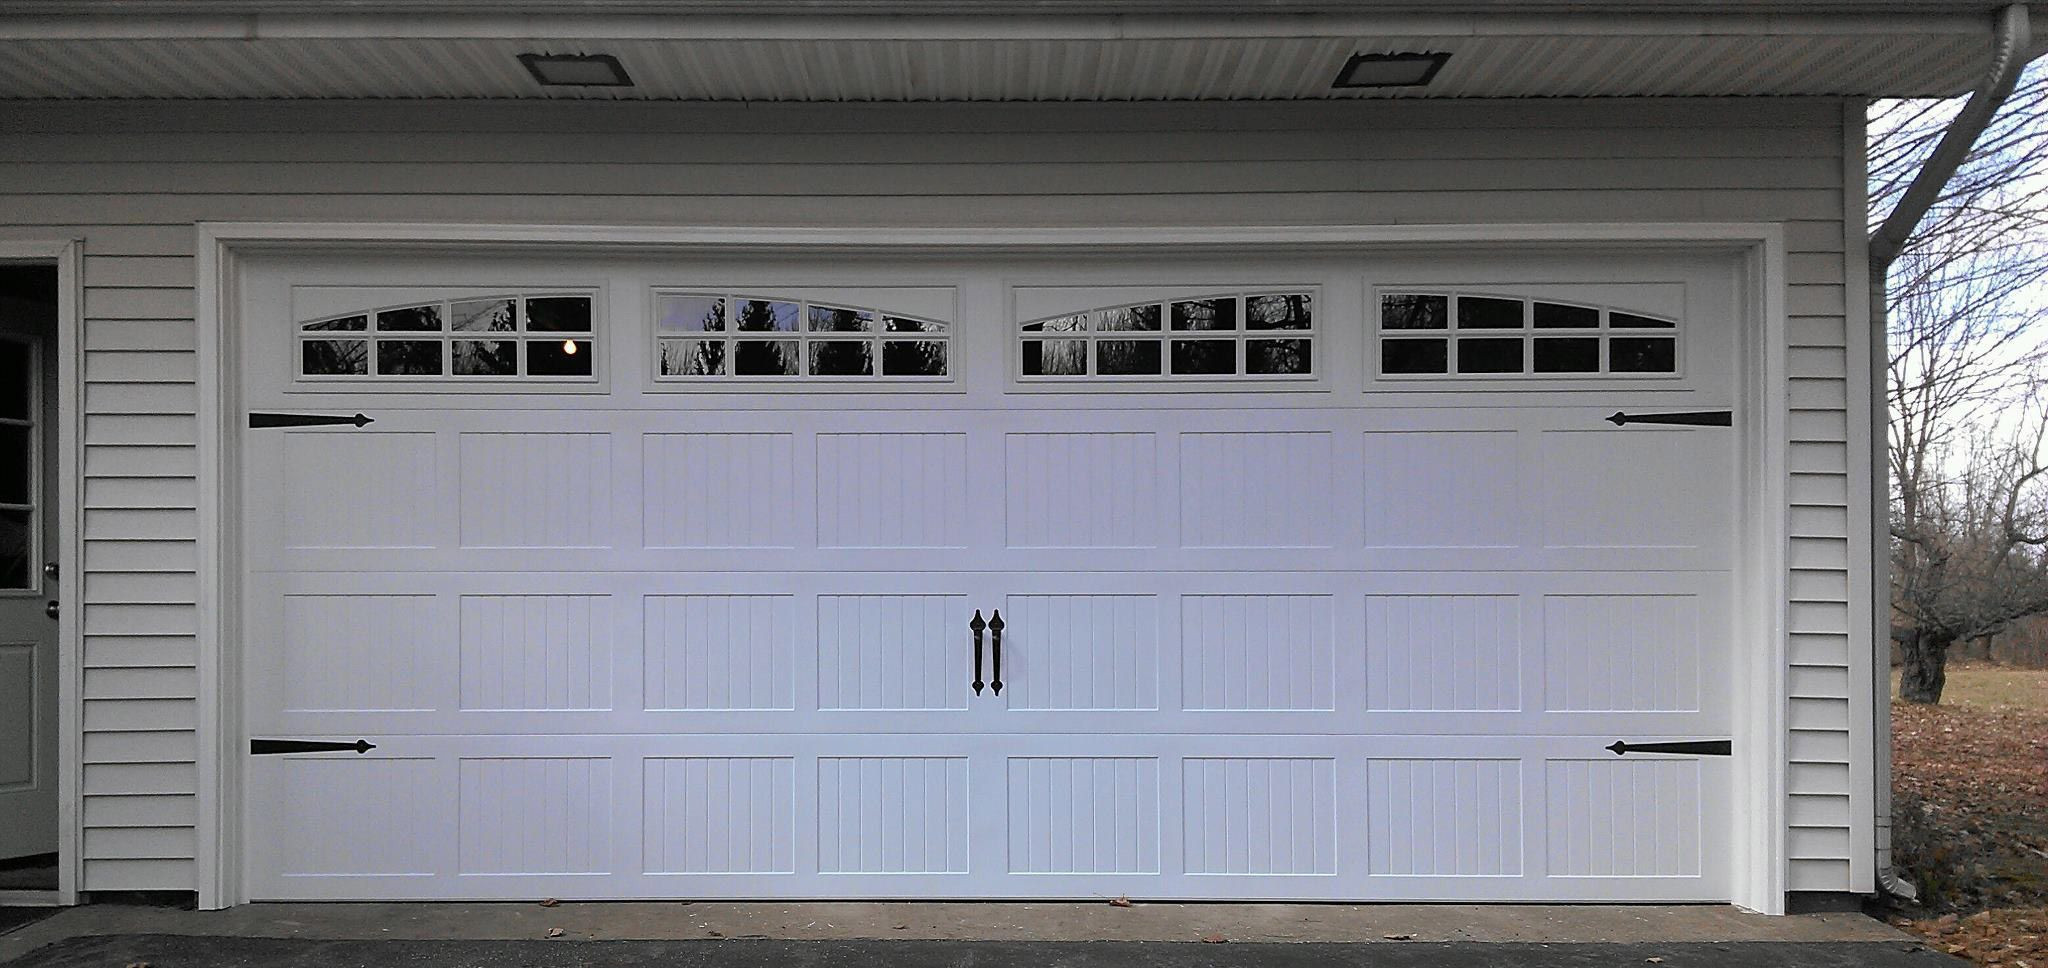 Garage Door Window Kits
 Garage Door Window Inserts Home Depot — All About Home